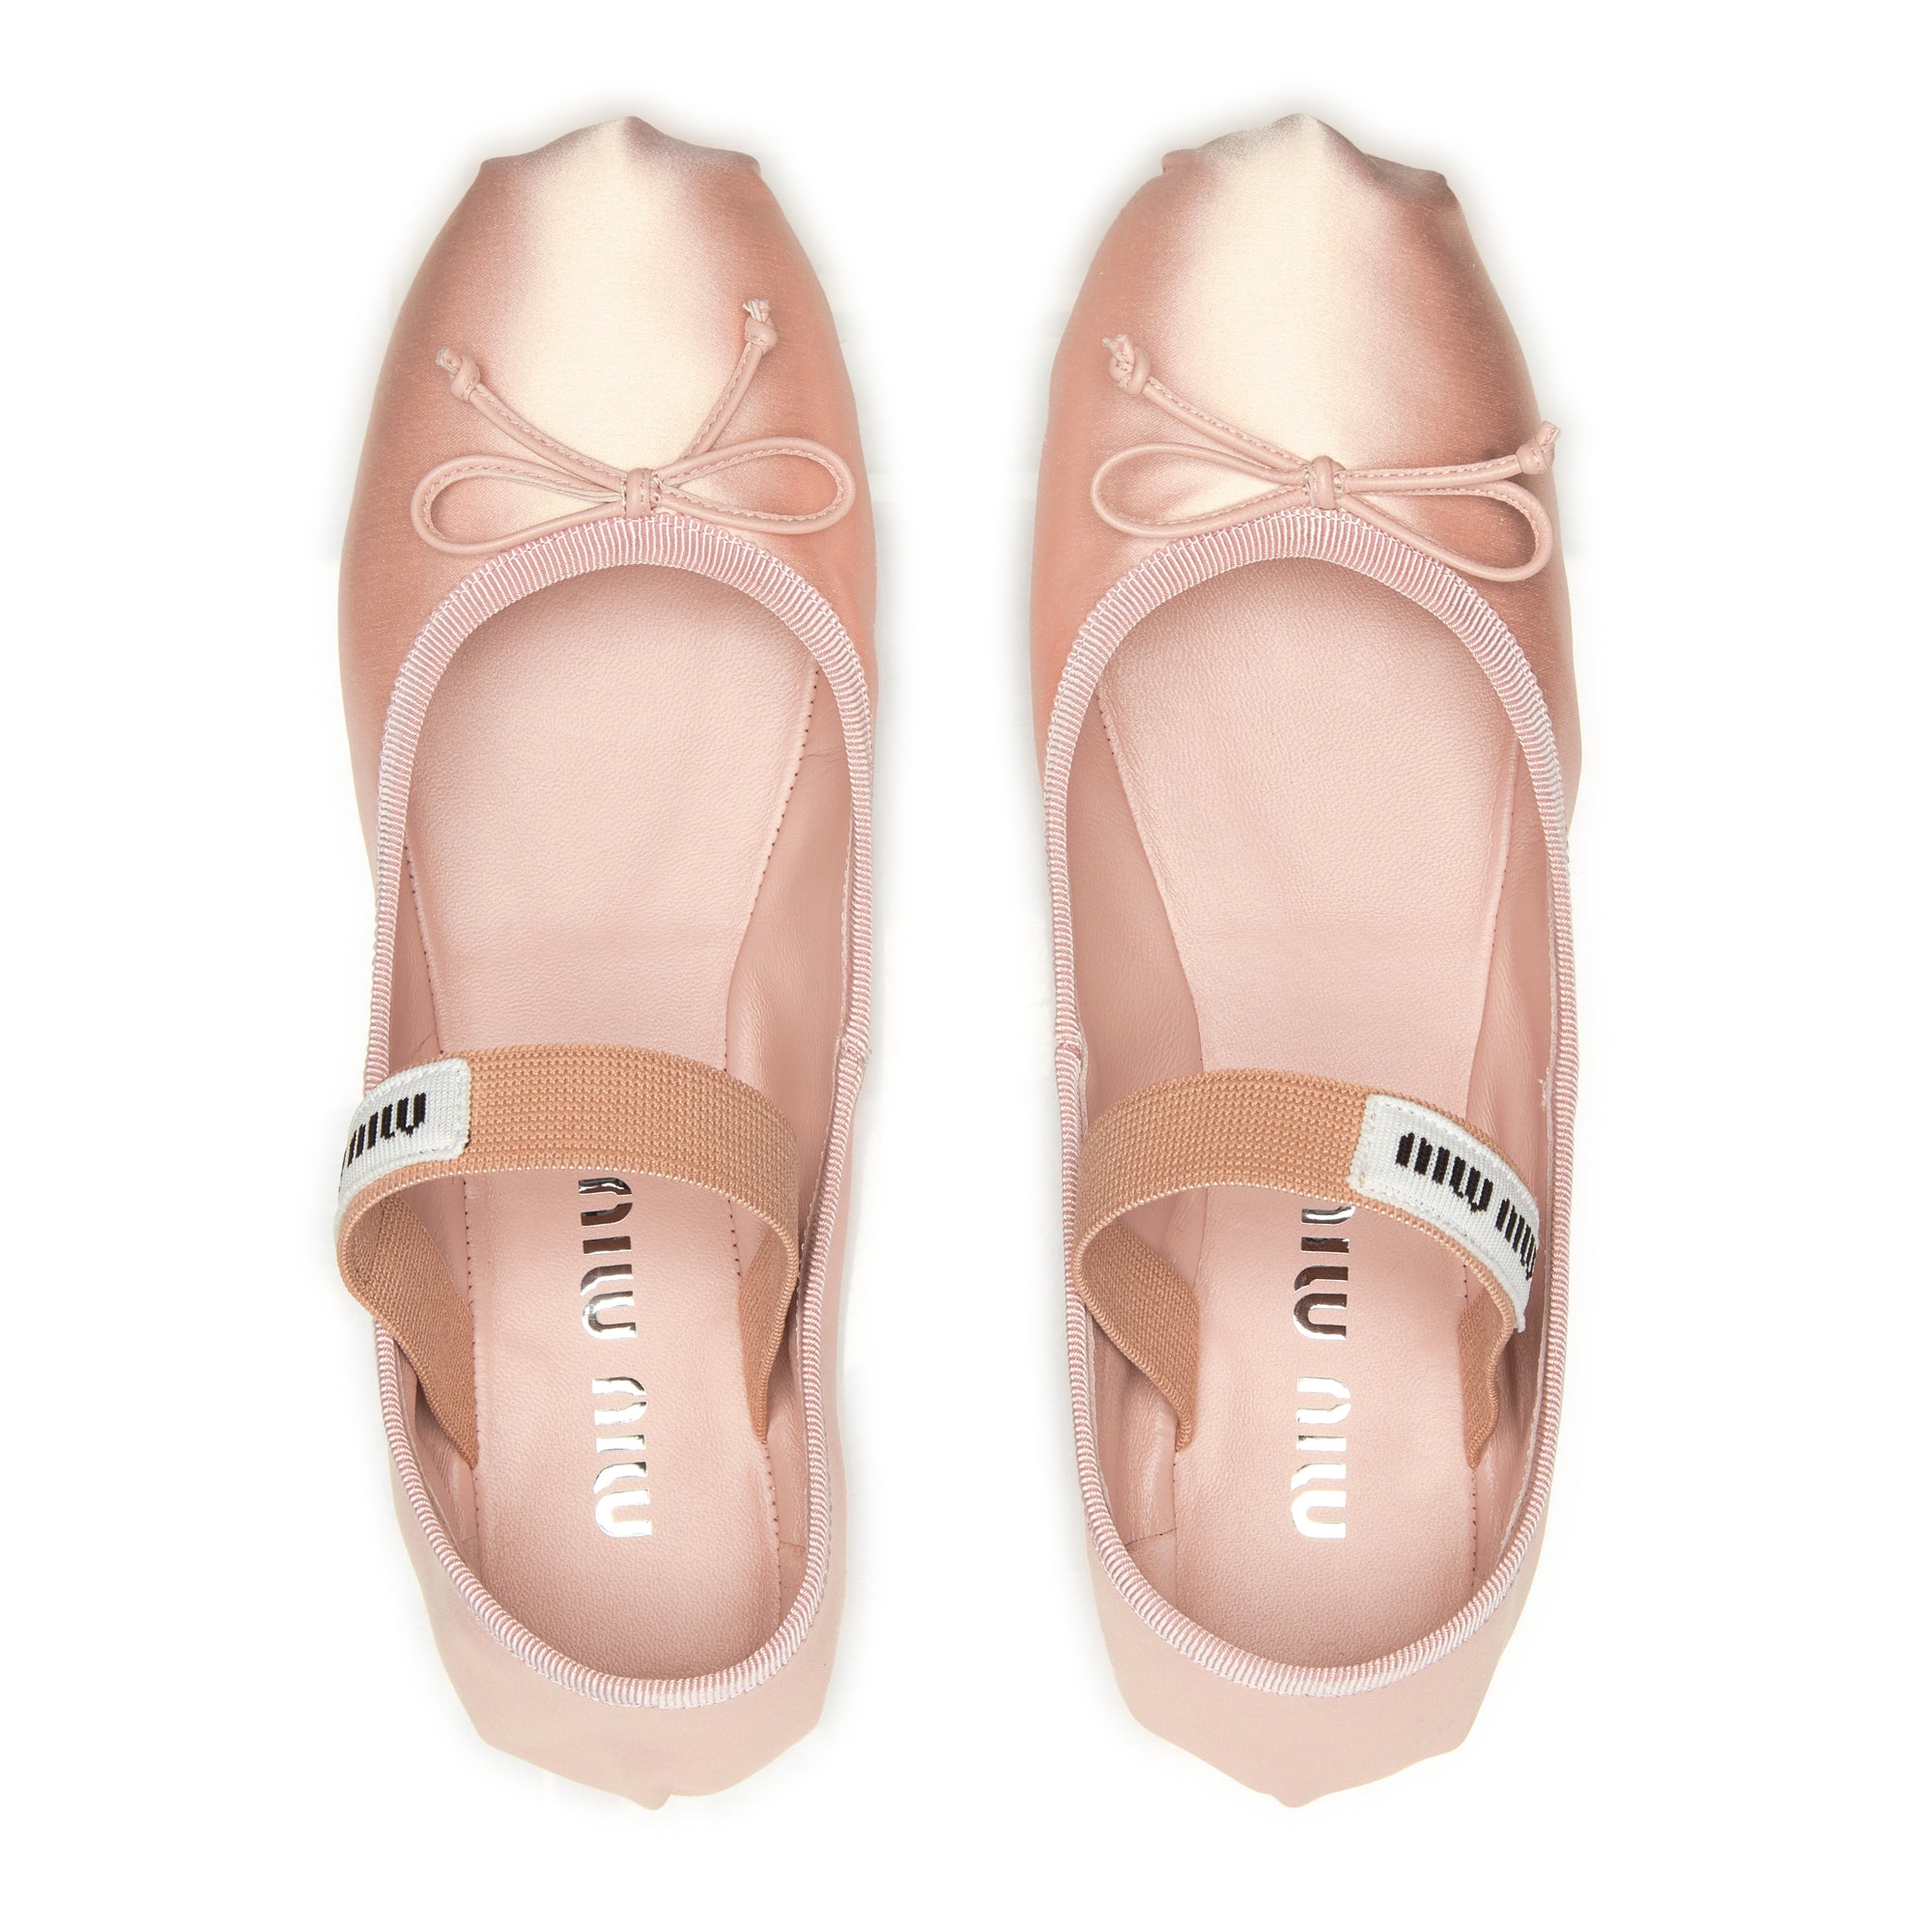 Miu Miu - Women's Ballerina Shoe - (Orchid Pink) view 5